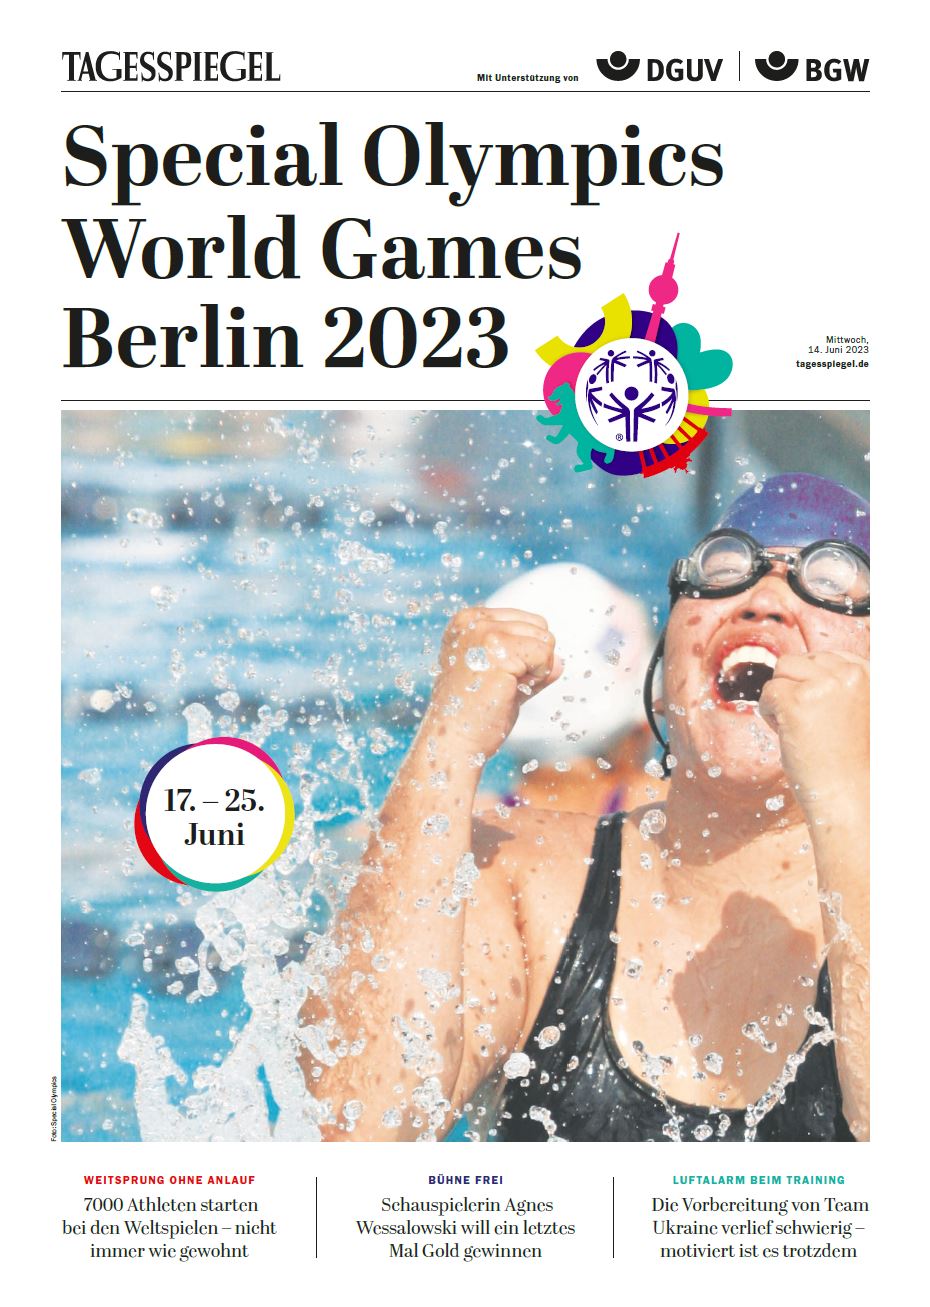 Das Cover der Tagesspeigel-Beilage zeigt eine Schwimmerin mit Schwimmbrille, die im Wasser die Arme hochreißt vor Freude